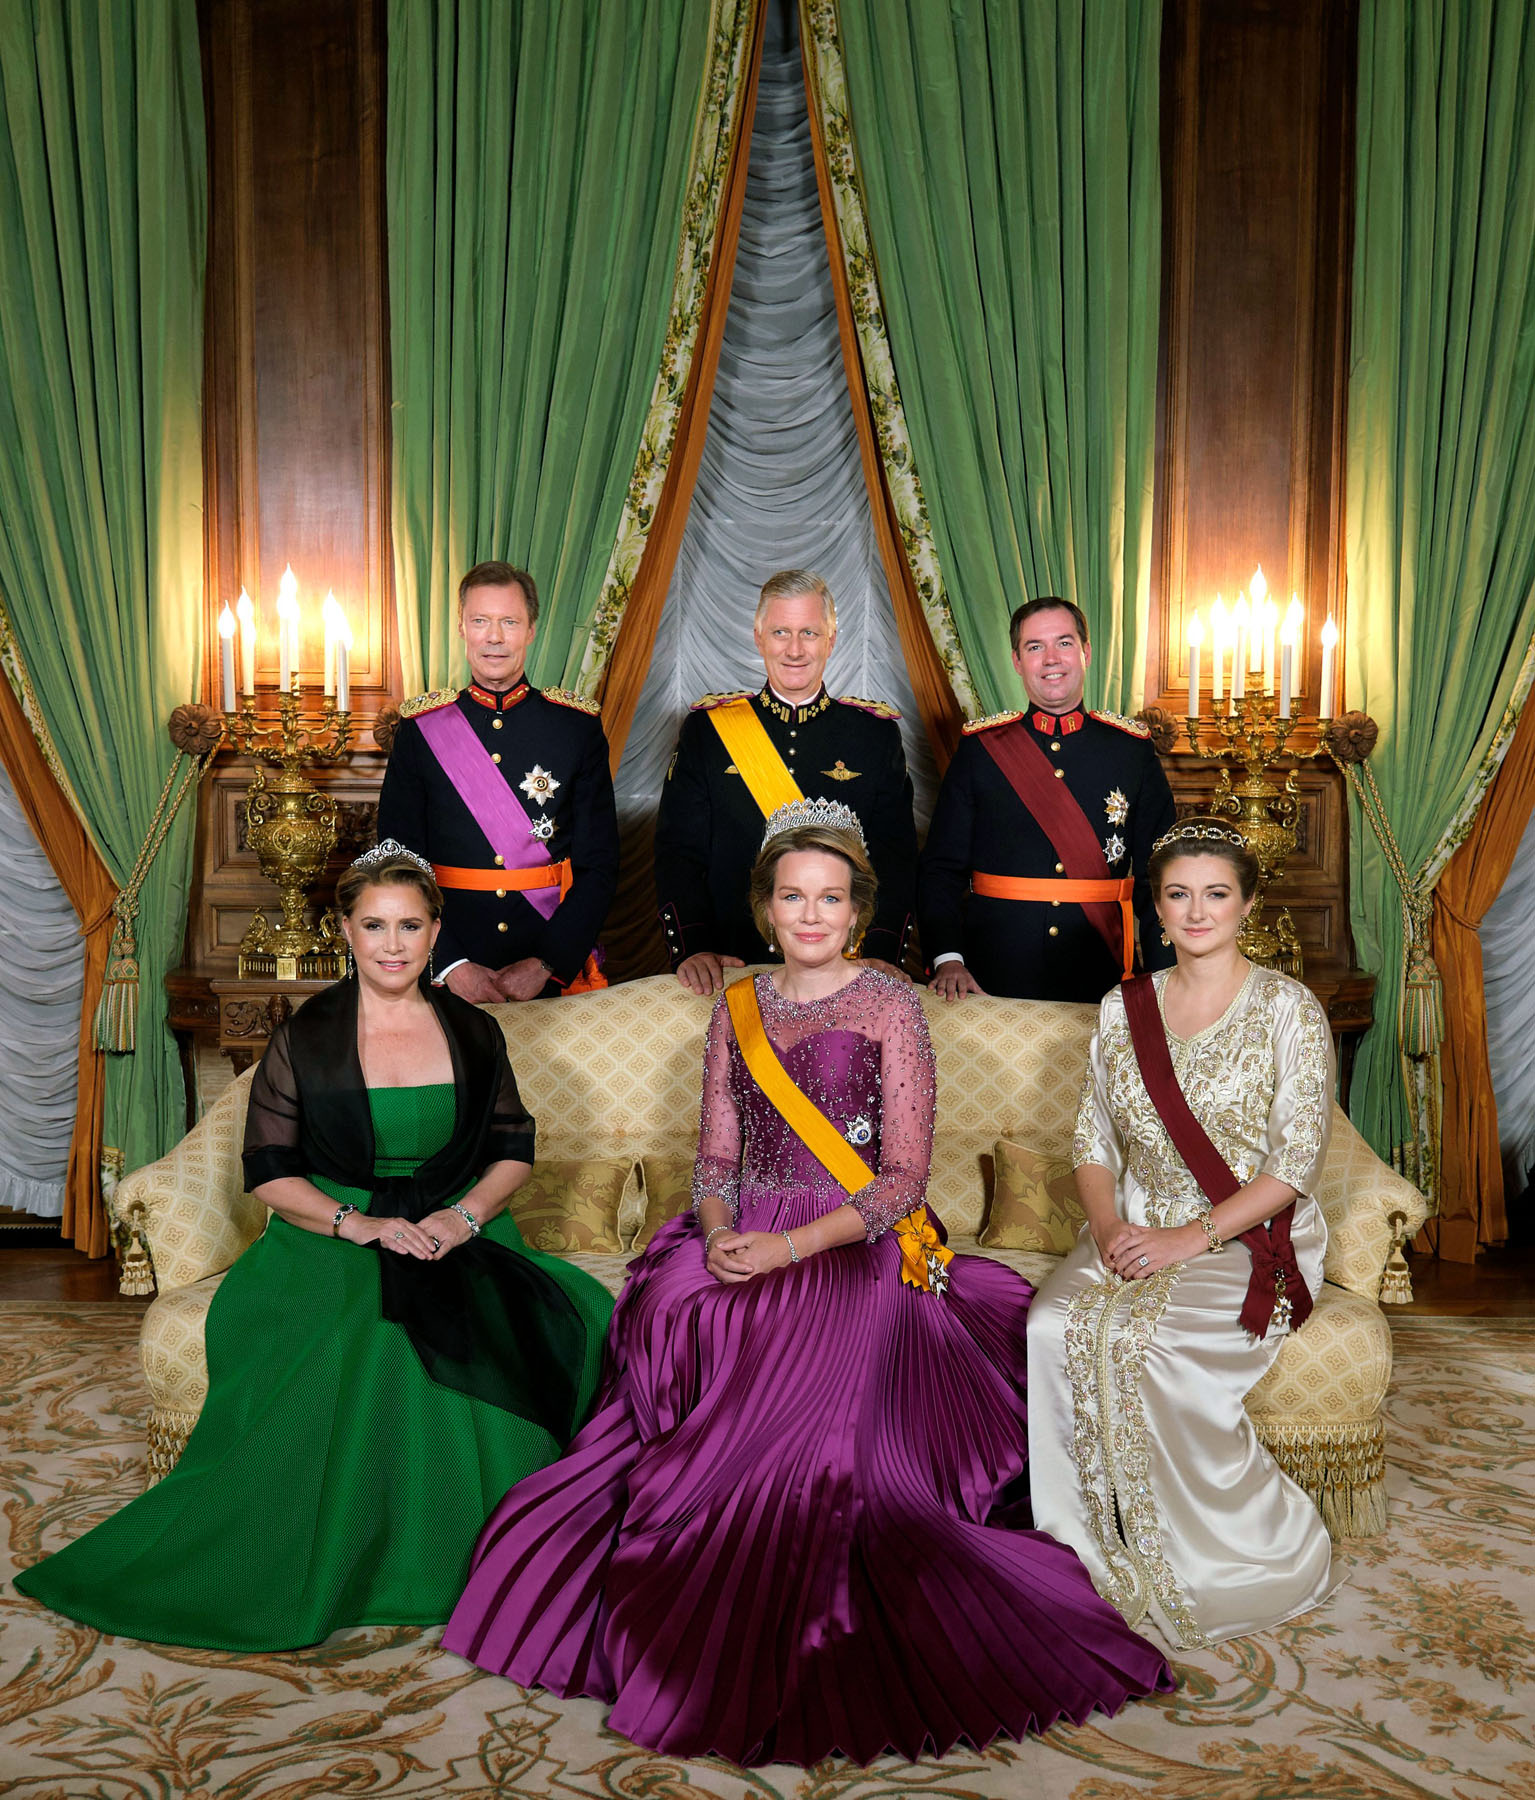 Злодейка пленила великого герцога 16 глава. Король и Королева Люксембург Анри. Анри (Великий герцог Люксембурга). Герцогиня Люксембурга. Королевская семья Люксембурга.